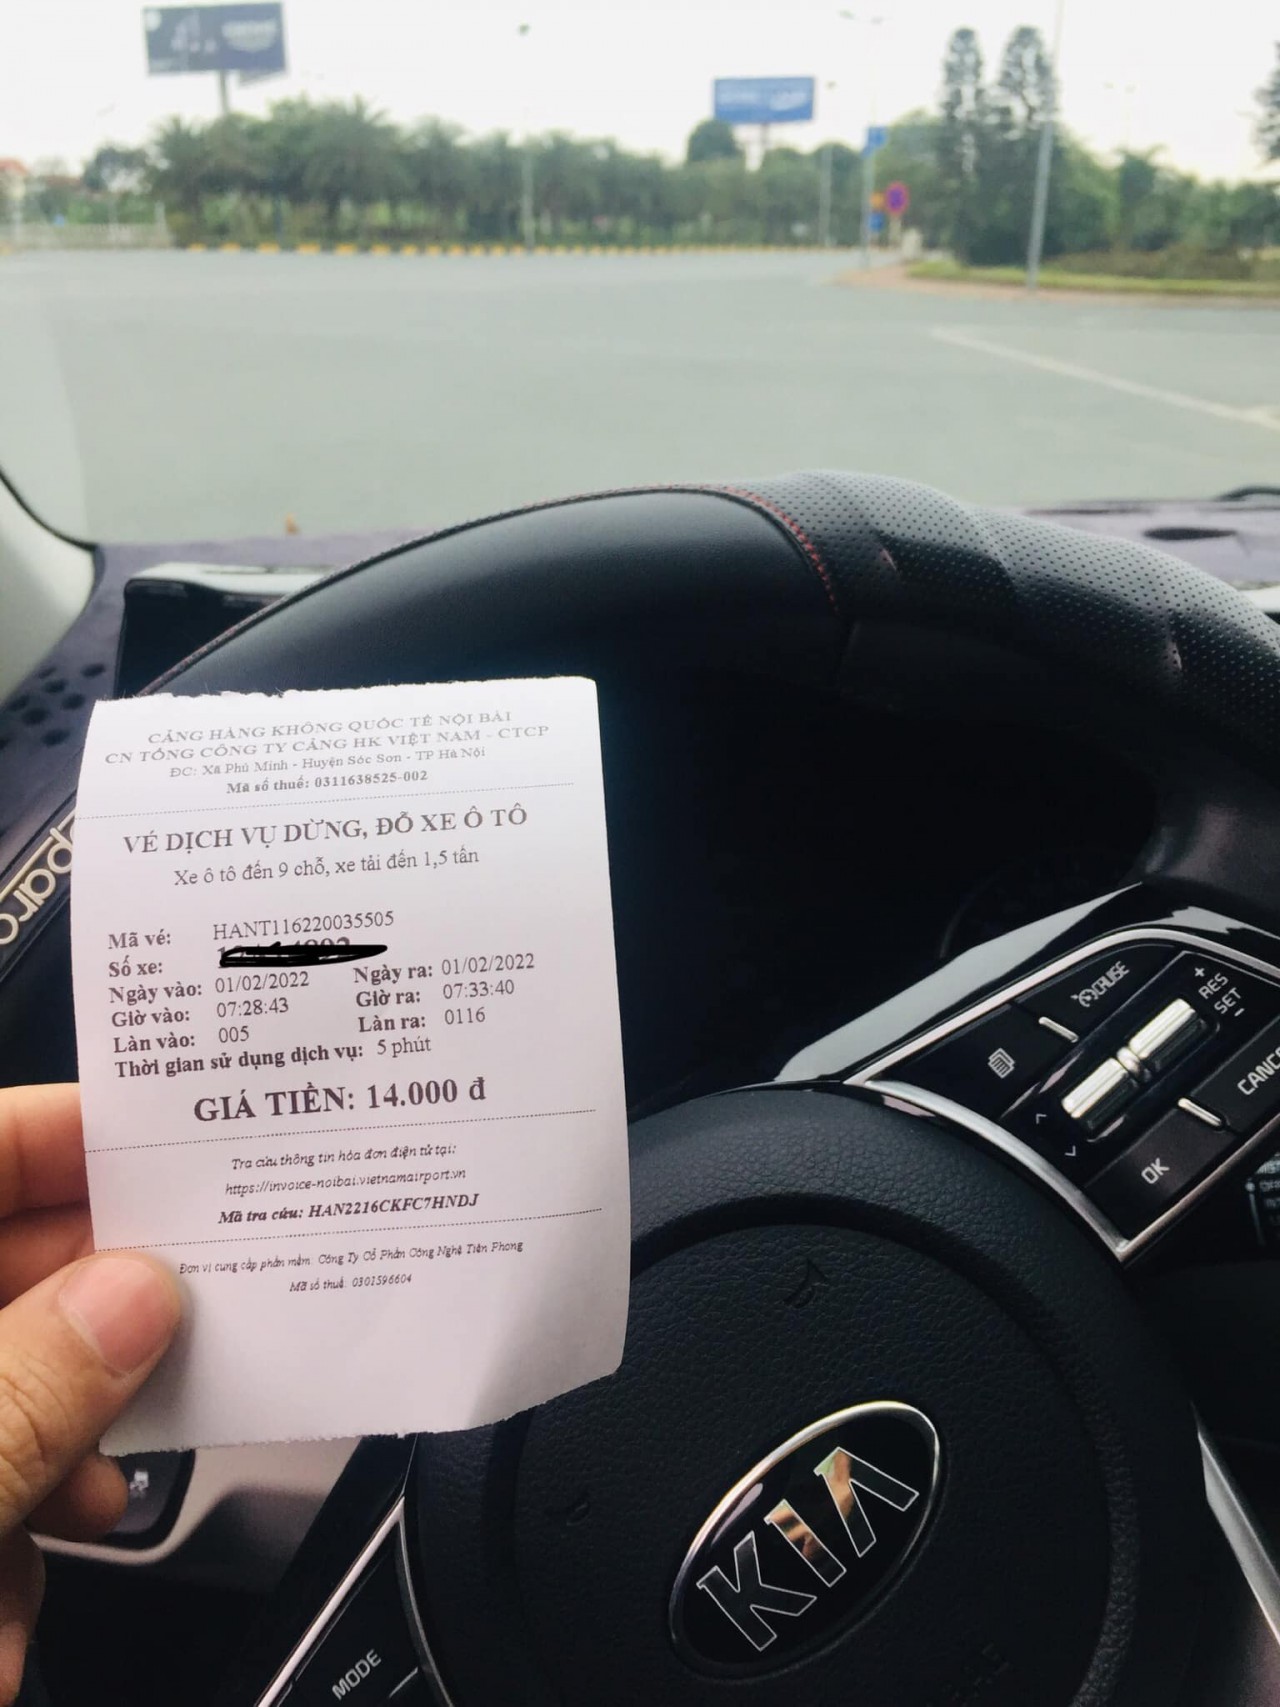 Vé gửi ô tô vào sân bay Nội Bài giảm 1.000 đồng từ ngày 1/2/2022.